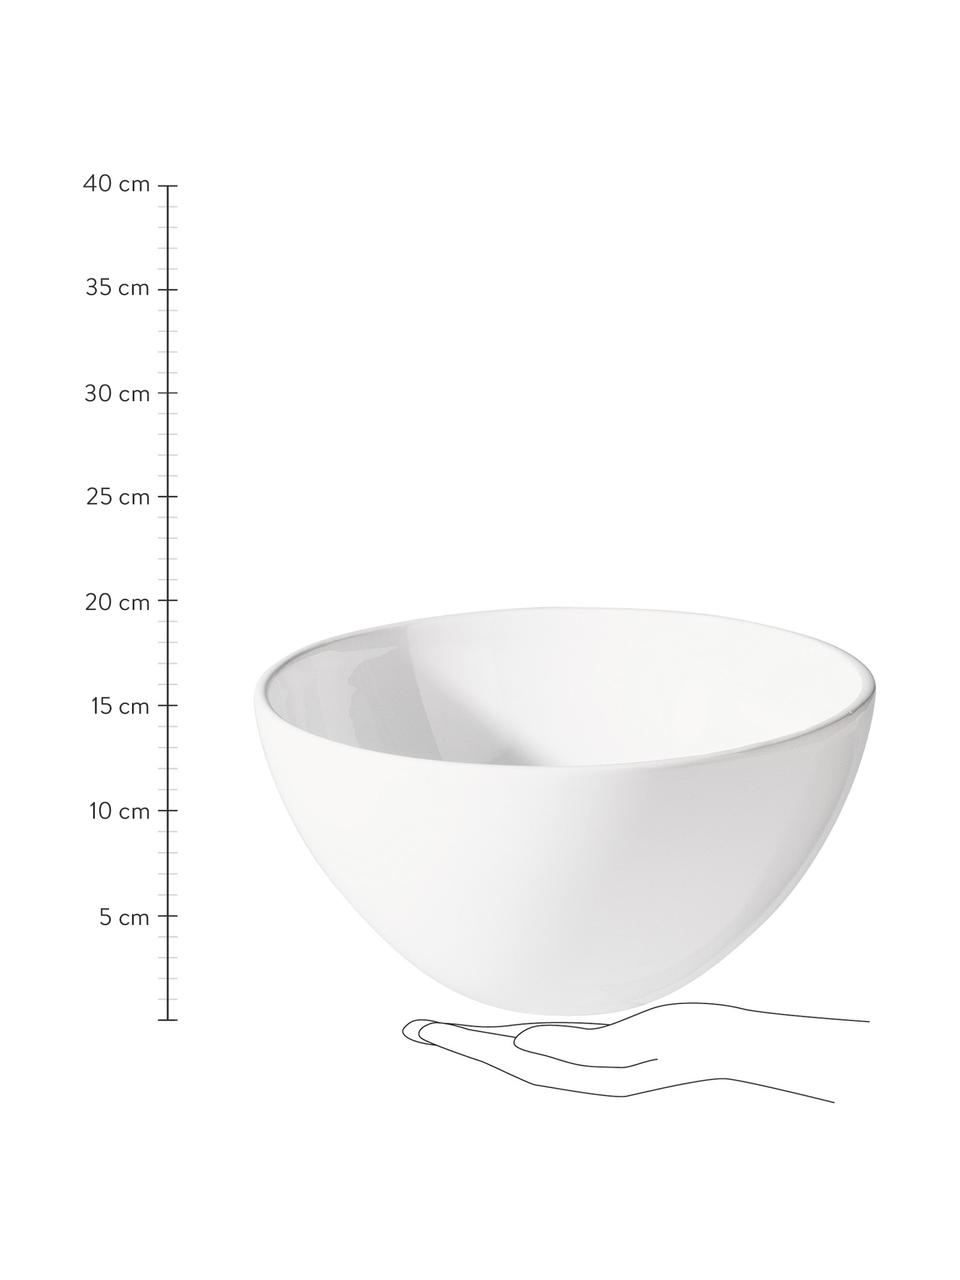 Salatschüssel Grande aus Steingut in Weiß, Ø 30 cm, Steingut, Weiß, Ø 30 x H 16 cm